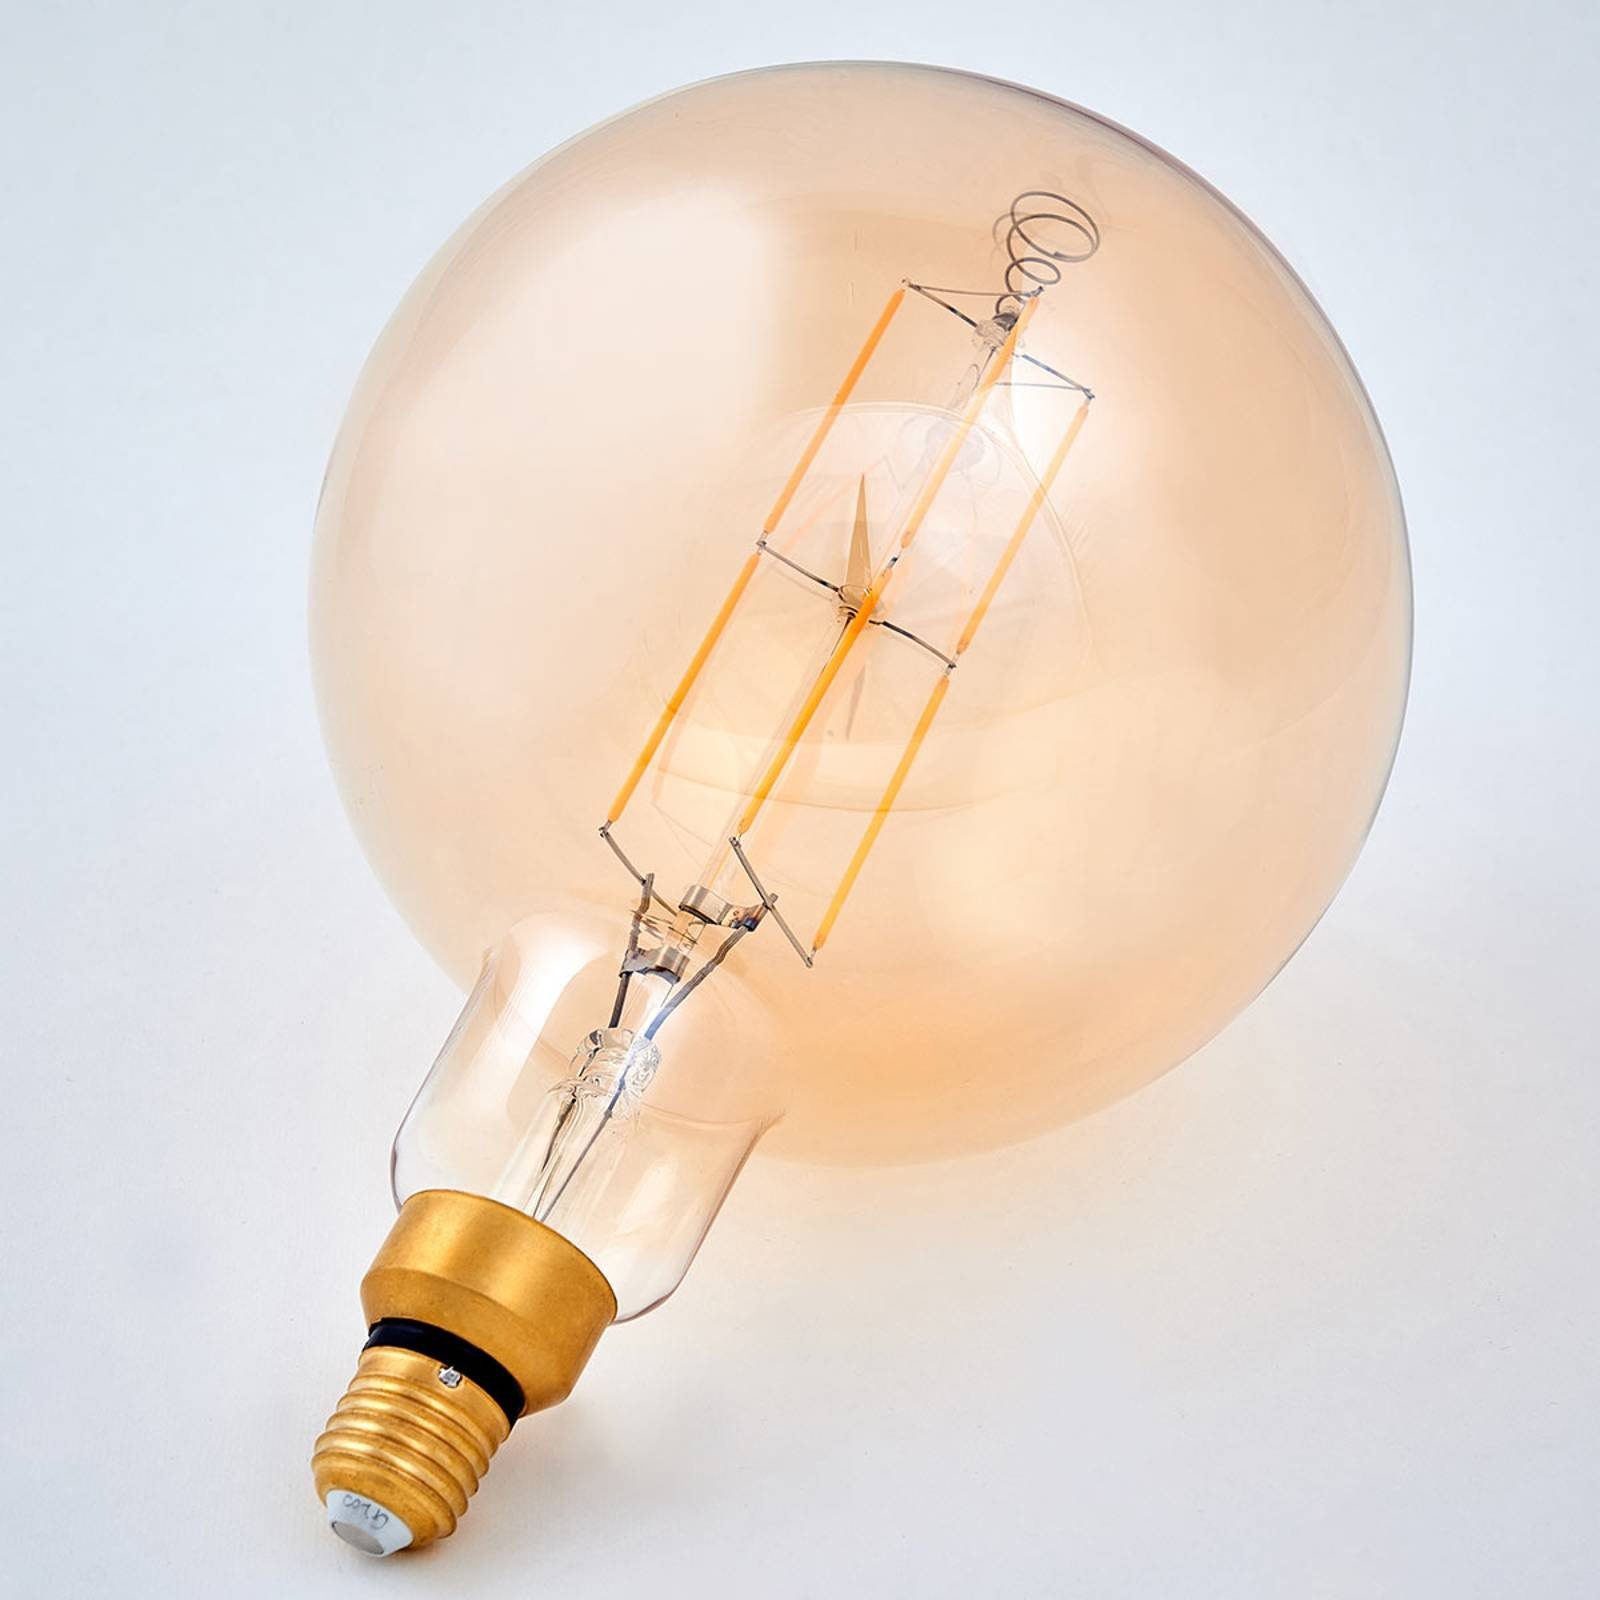 LED, Energiesparlampe E27, warmweiß, LED-Leuchtmittel Leuchtmittel E27, Glas, LED-Lampen E27 Lindby